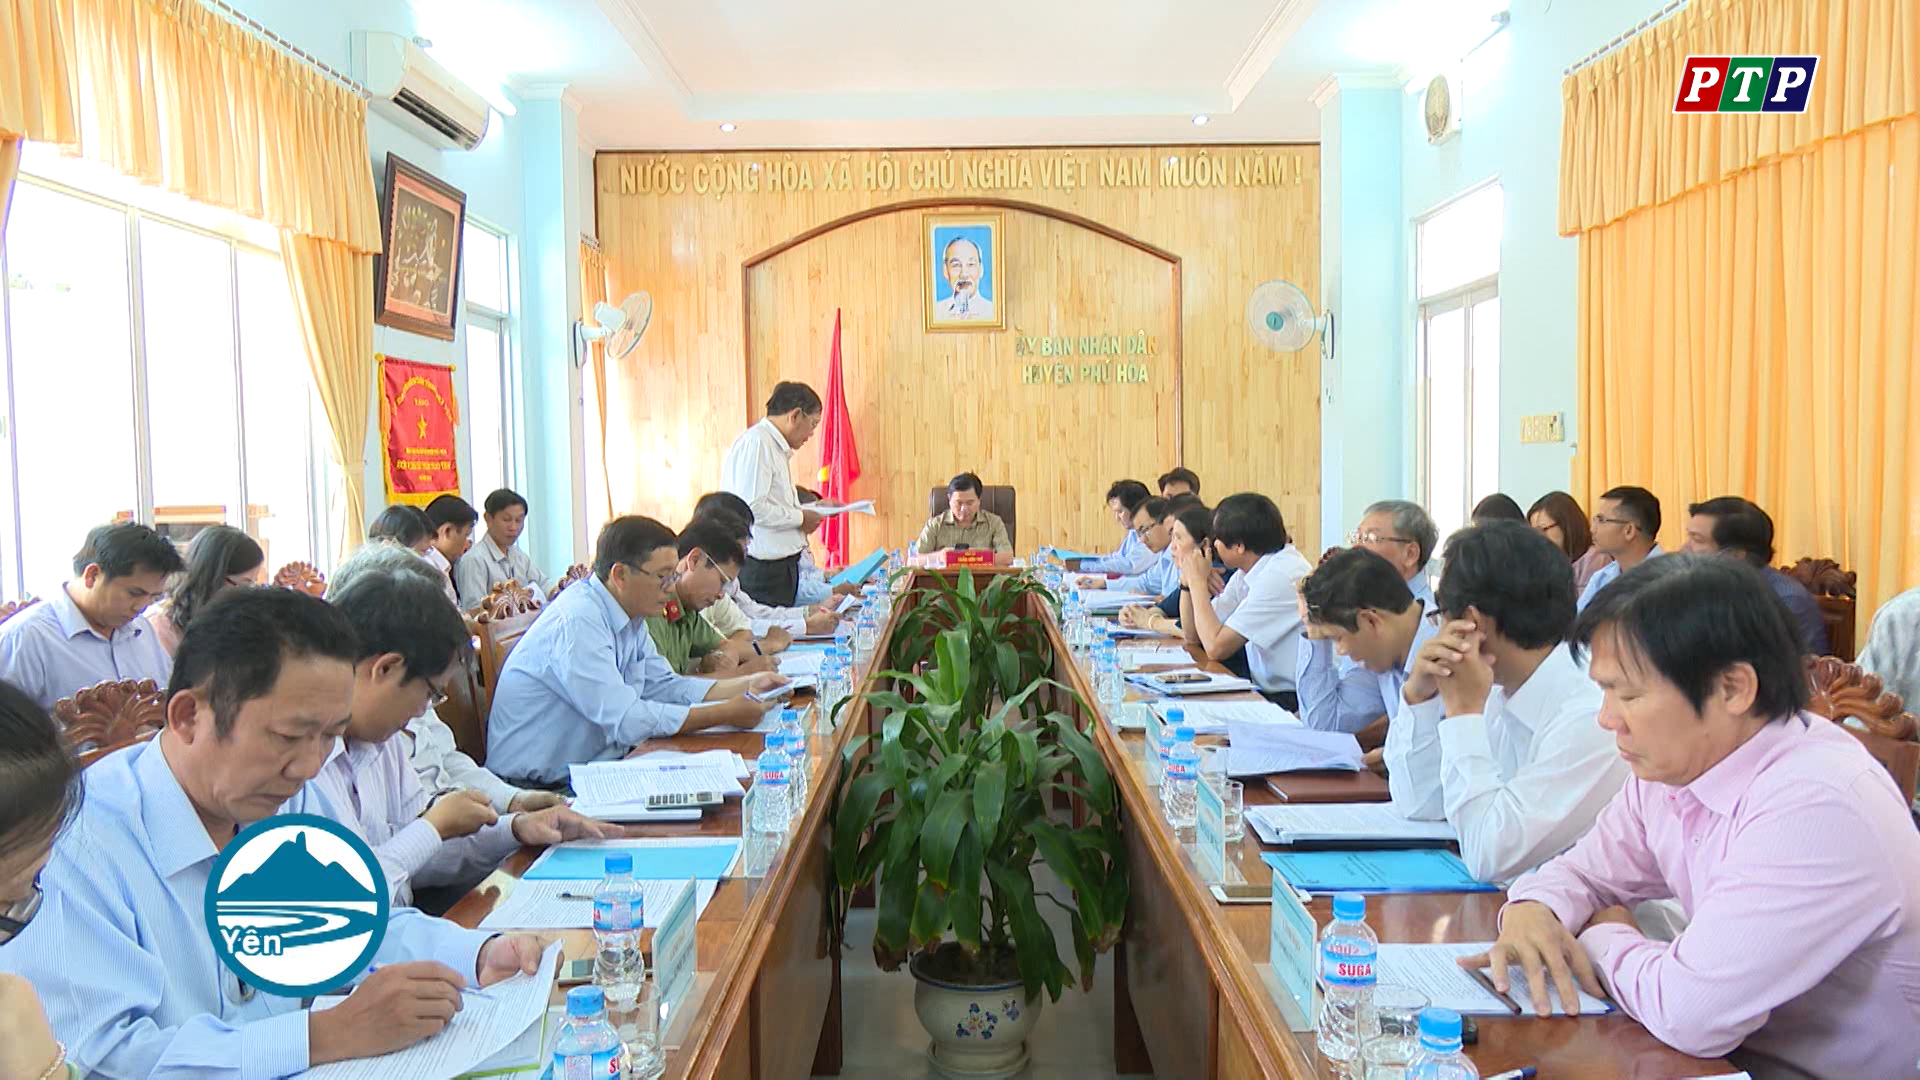 Buổi làm việc của lãnh đạo tỉnh với lãnh đạo huyện Phú Hòa về một số nội dung về xây dựng nông thôn mới của huyện